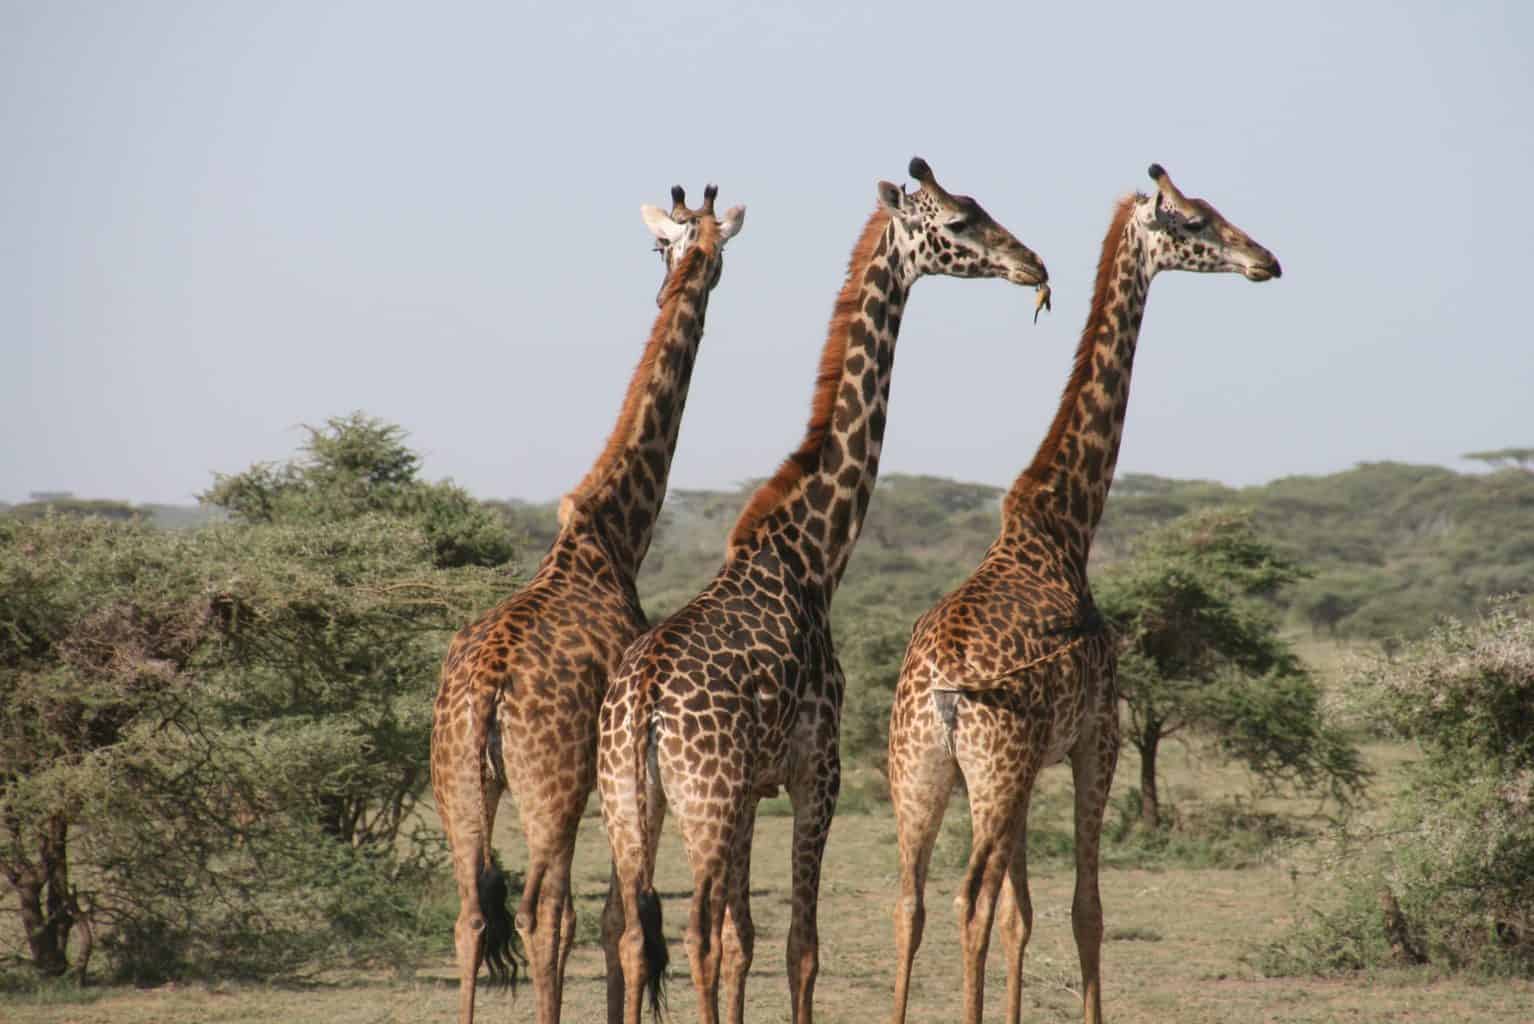 Three giraffe walking in an open field